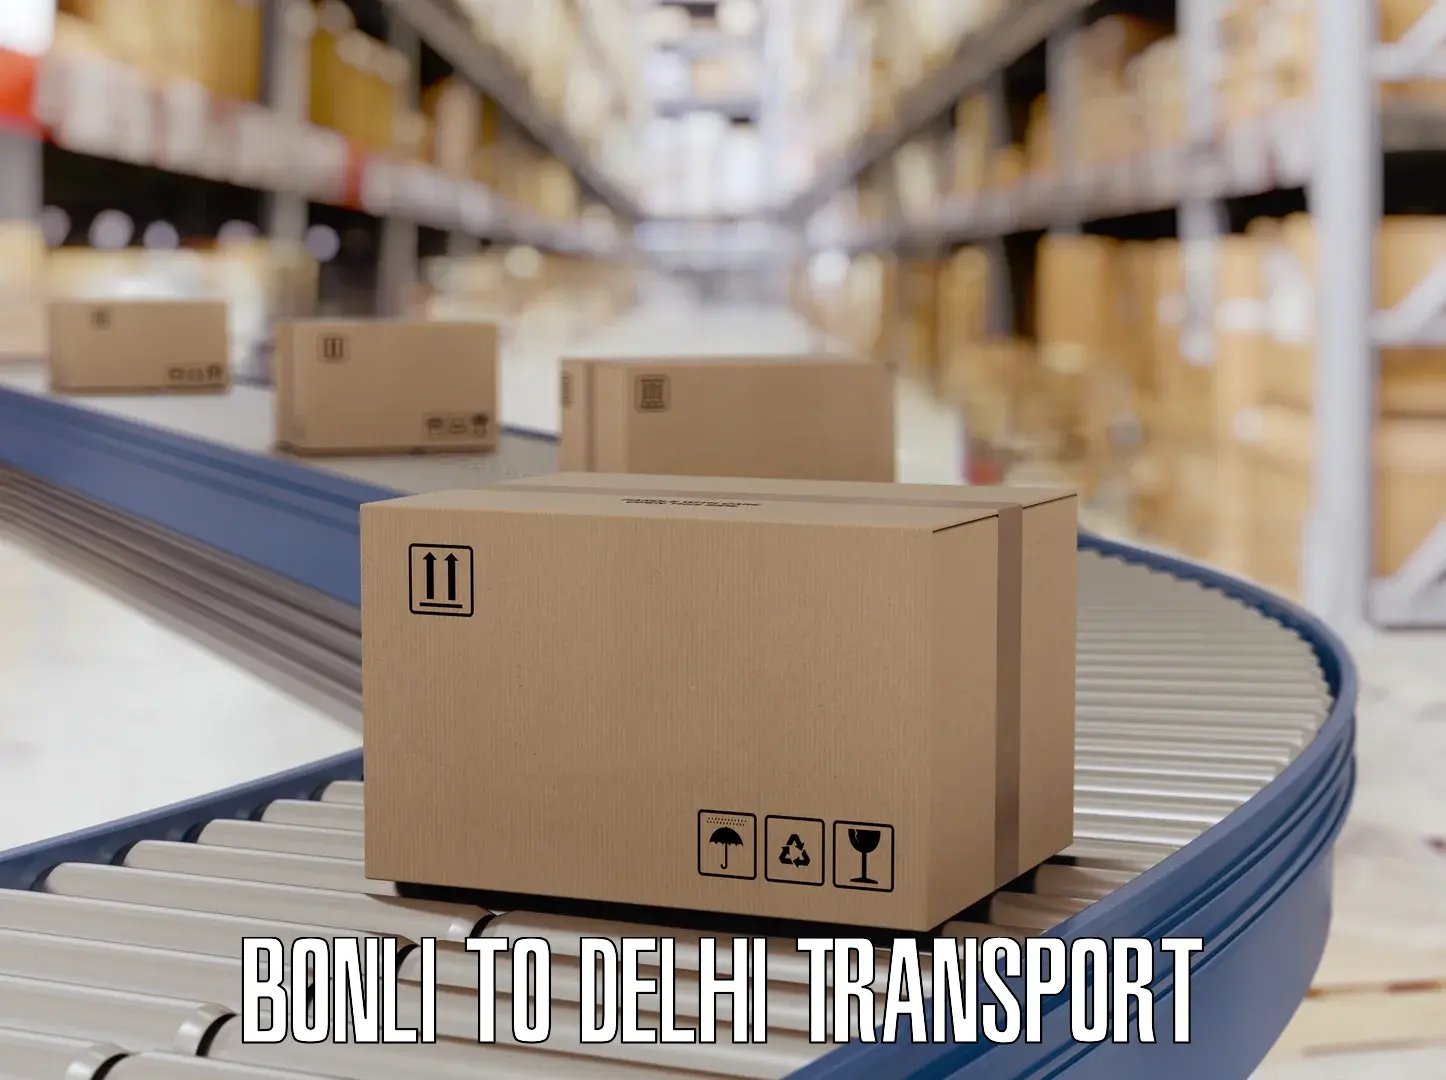 Daily parcel service transport Bonli to Kalkaji